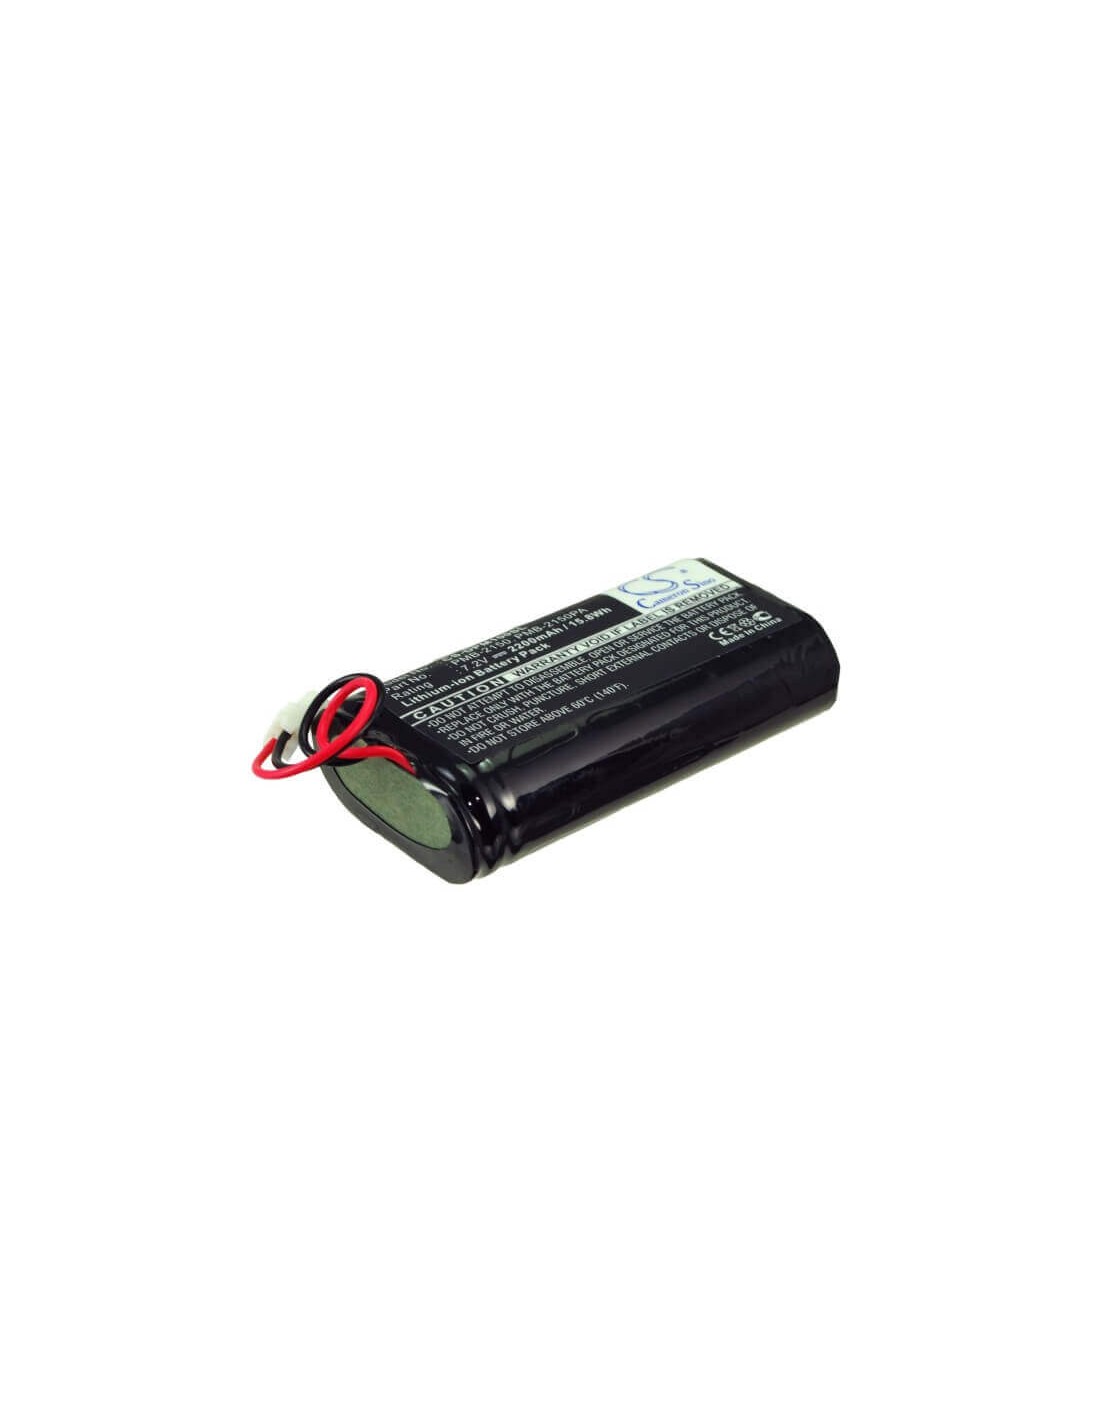 Battery for Dam Pm100-dk, Pm100ii-dk, Pm100iii-dk 7.2V, 2200mAh - 15.84Wh